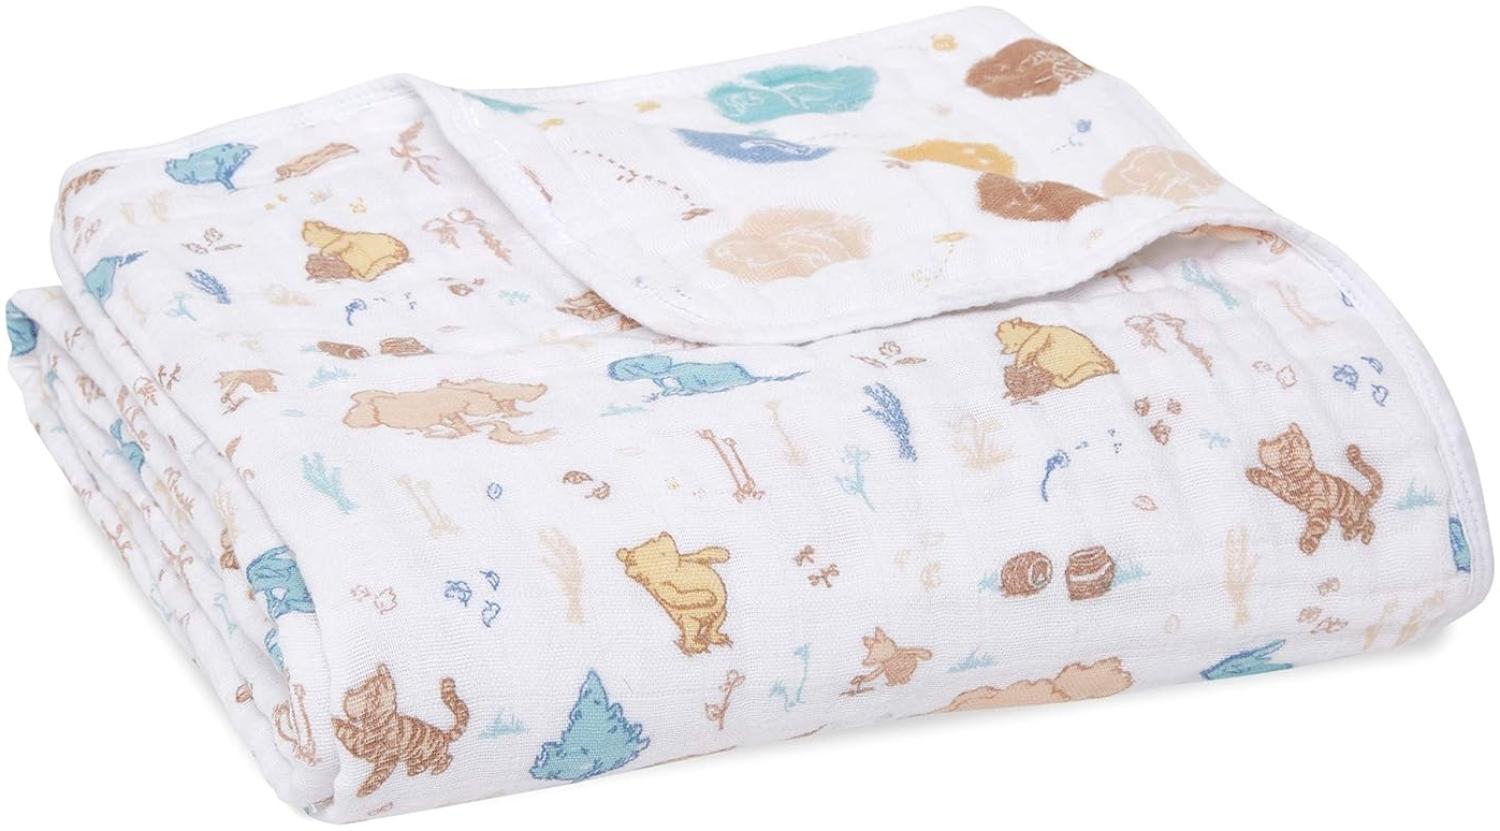 aden + anais Dream Blanket, Weiche und warme Decke für Neugeborene und Kleinkinder, Babydecken für Mädchen & Jungen, 4 Lagen aus 100% Baumwoll-Musselin, 120x120cm, Winnie in The Woods Bild 1